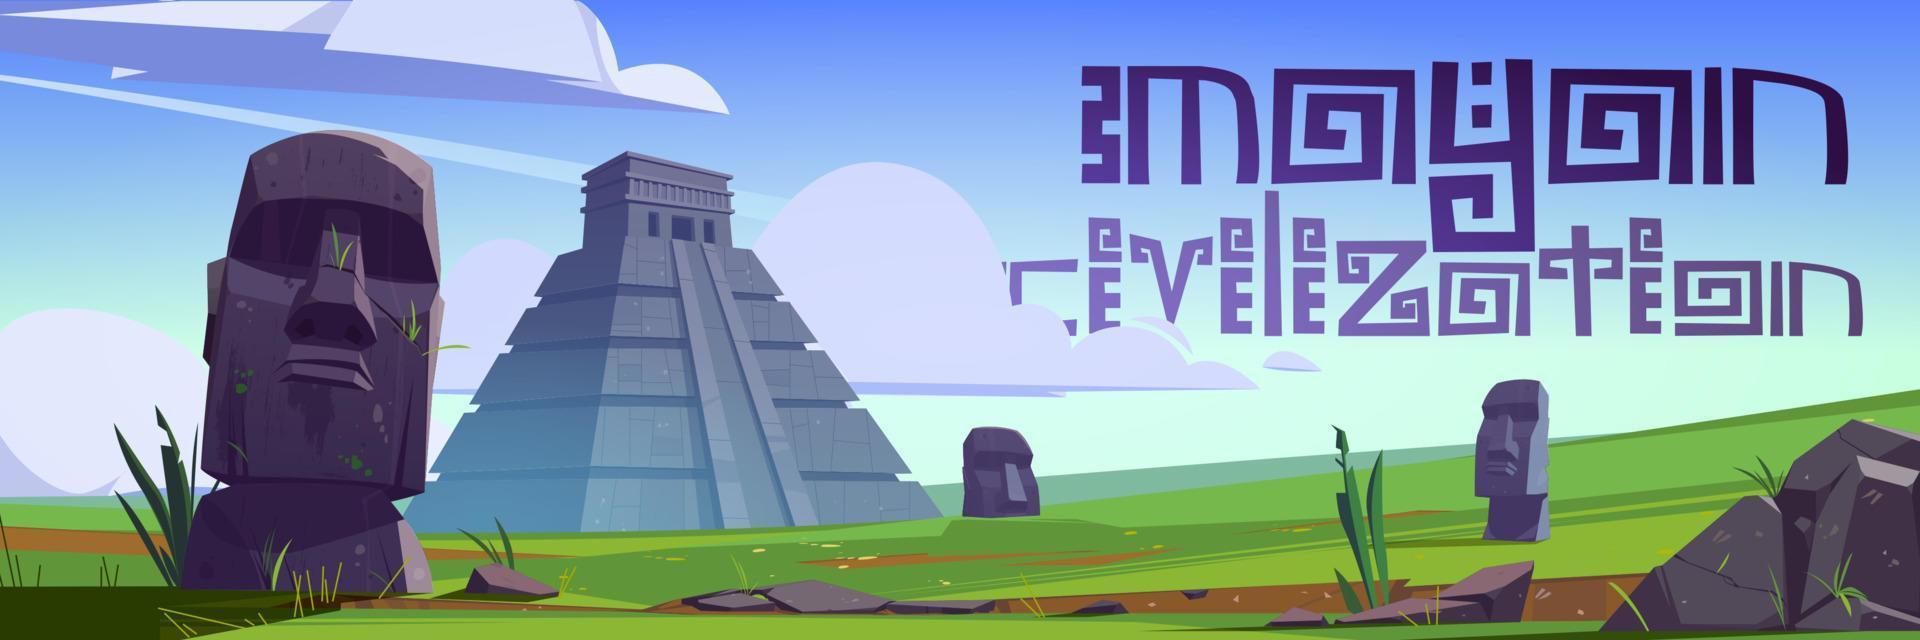 monumentos de la civilización maya y estatuas moai vector